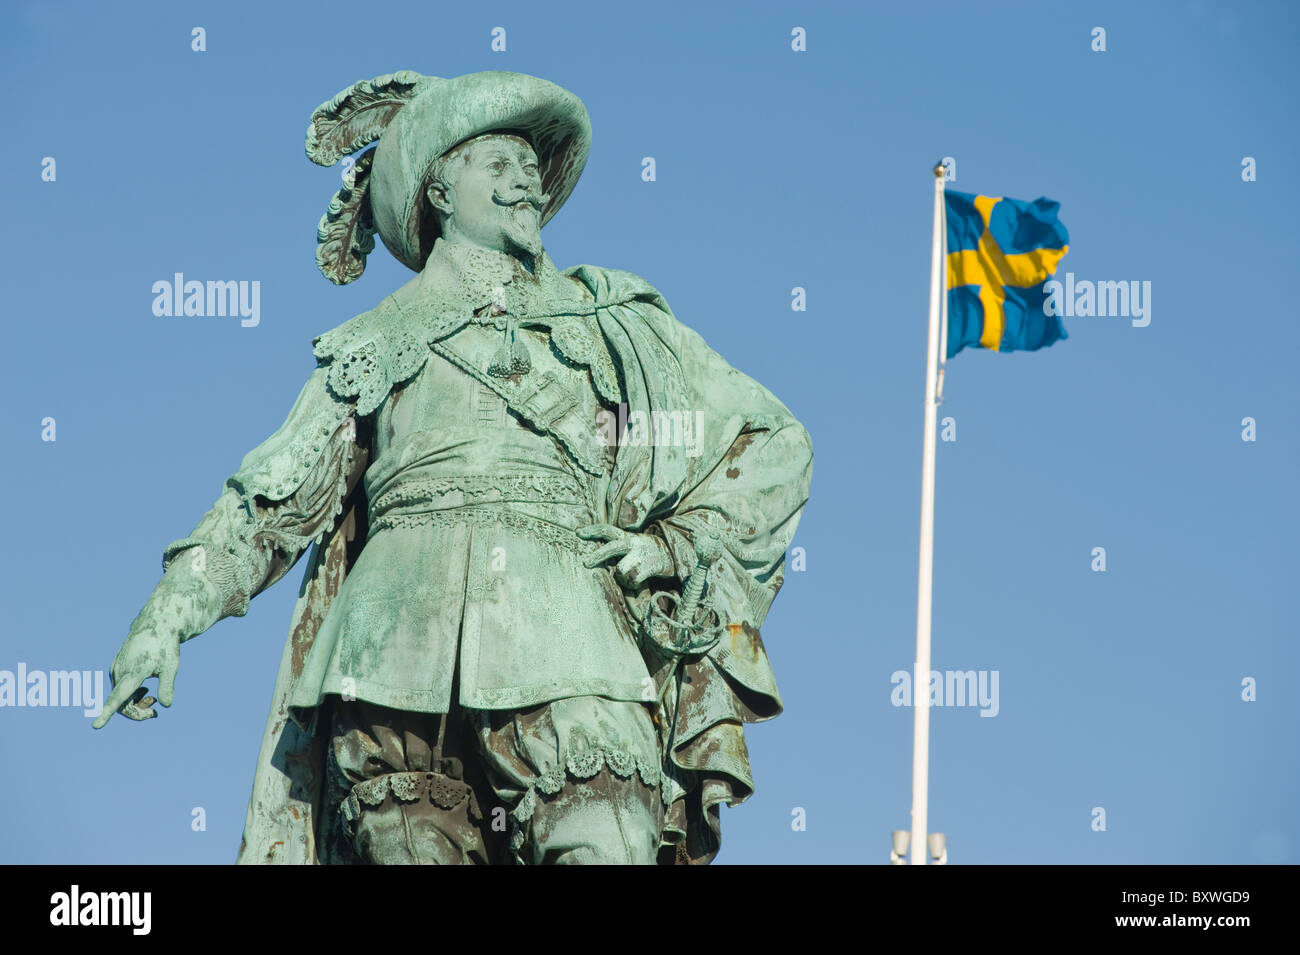 Statue du roi Gustavus Adolphus de Suède, sur la place Gustavus Adolphus, avec le drapeau national suédois, Göteborg, Suède. Banque D'Images